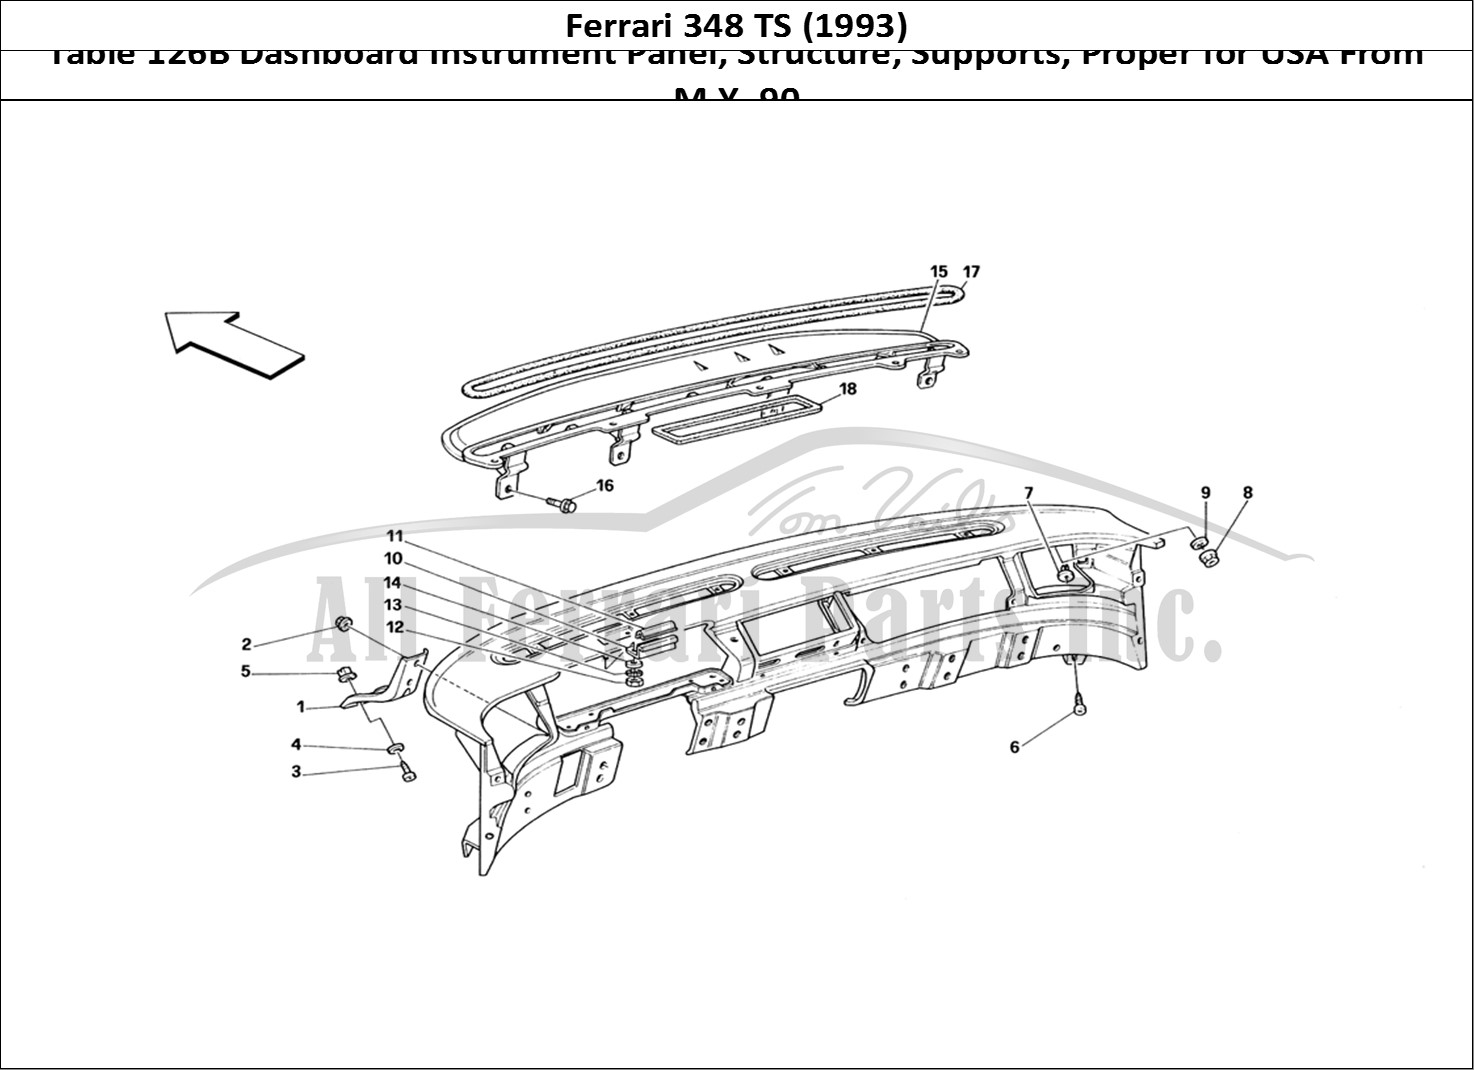 Ferrari Parts Ferrari 348 TB (1993) Page 126 Dashboard - Structure and